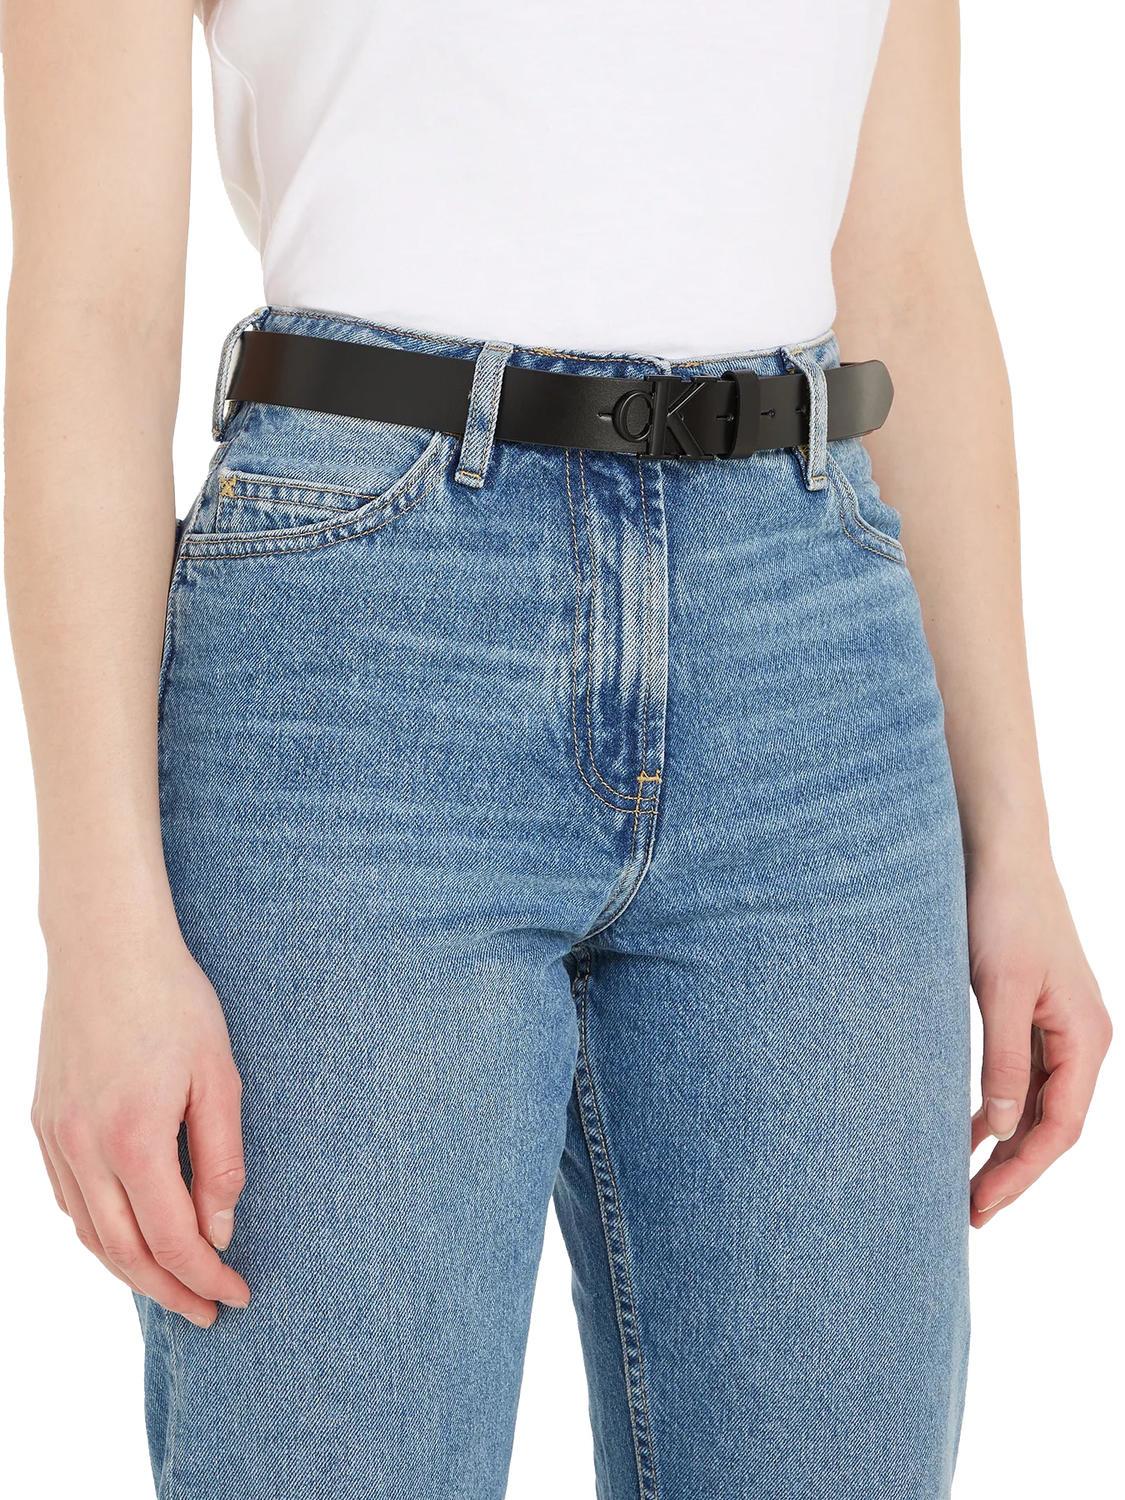 Calvin Klein Ck Jeans Schwarz- Round 3.0 Einkaufen Mono Zu Ledergürtel Outlet-Preisen